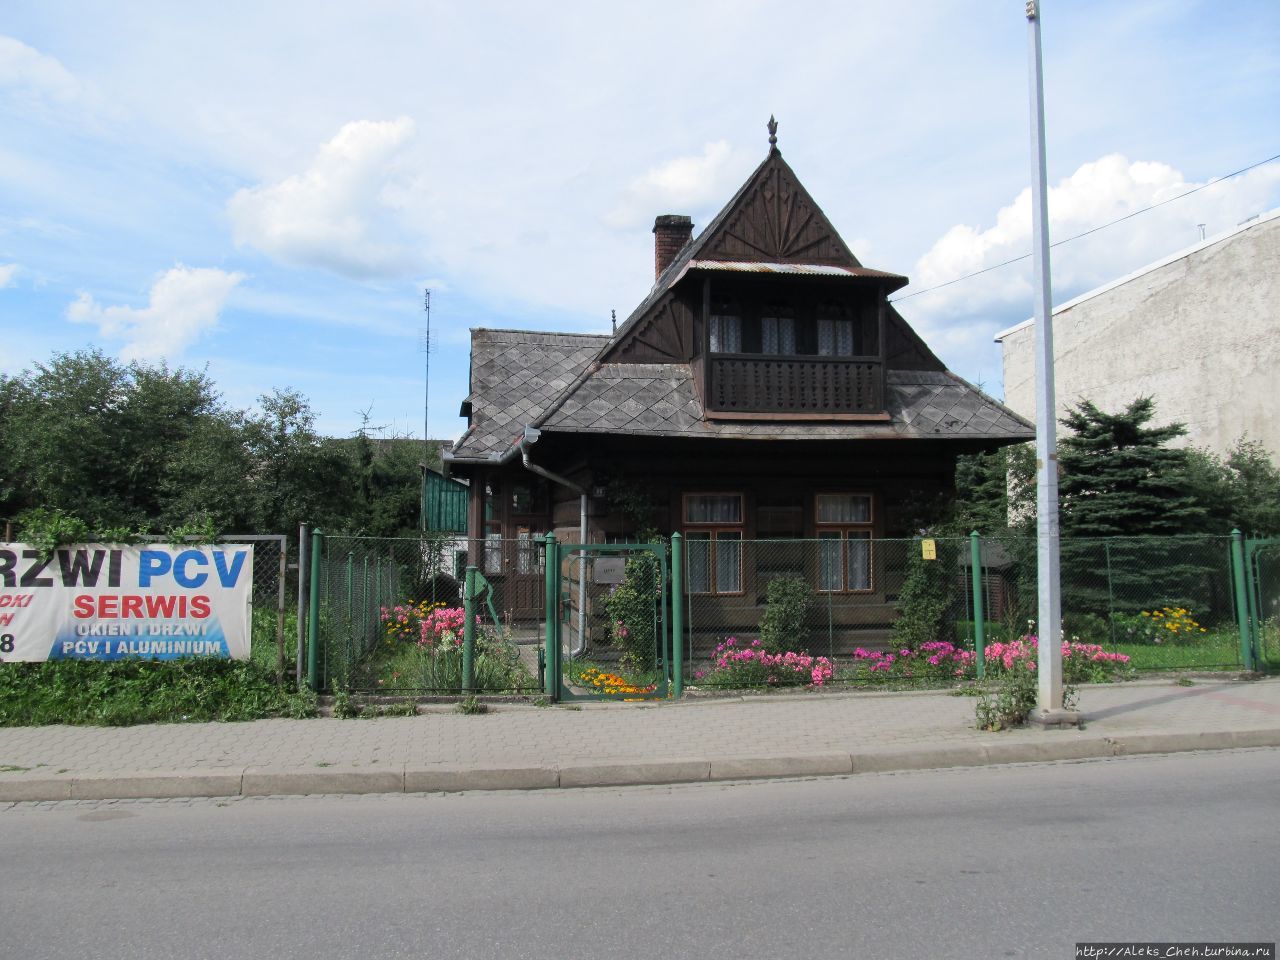 Образец подхалянской архитектуры Новы-Тарг, Польша